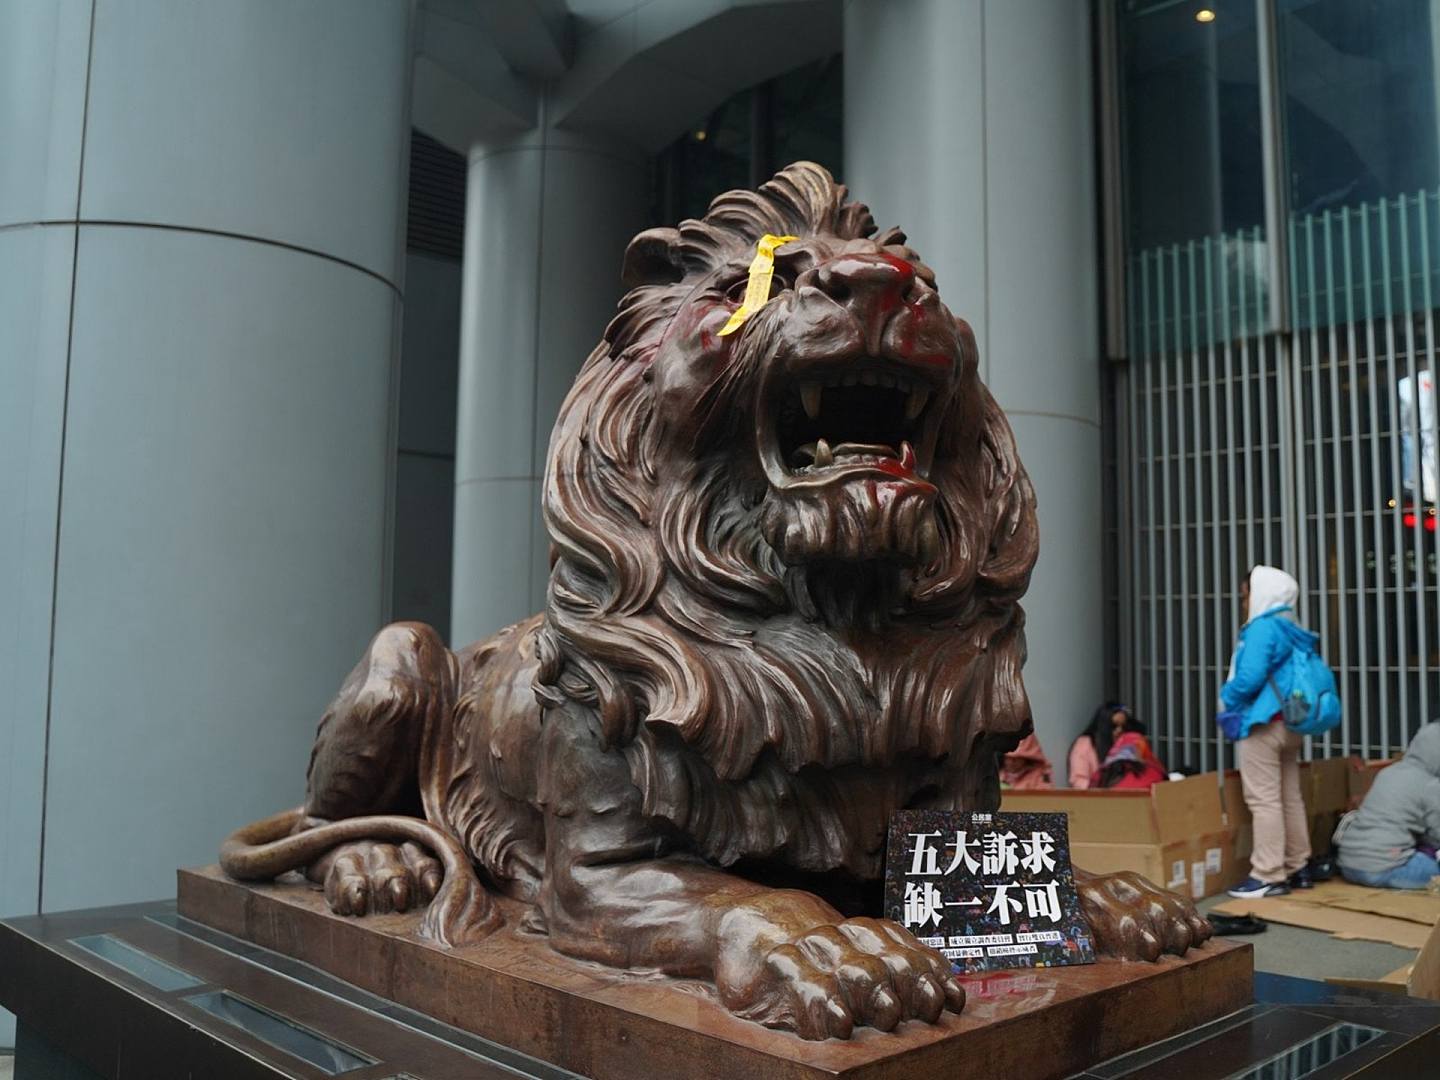 汇丰银行狮子像被喷红漆并贴上标语。（HK01）